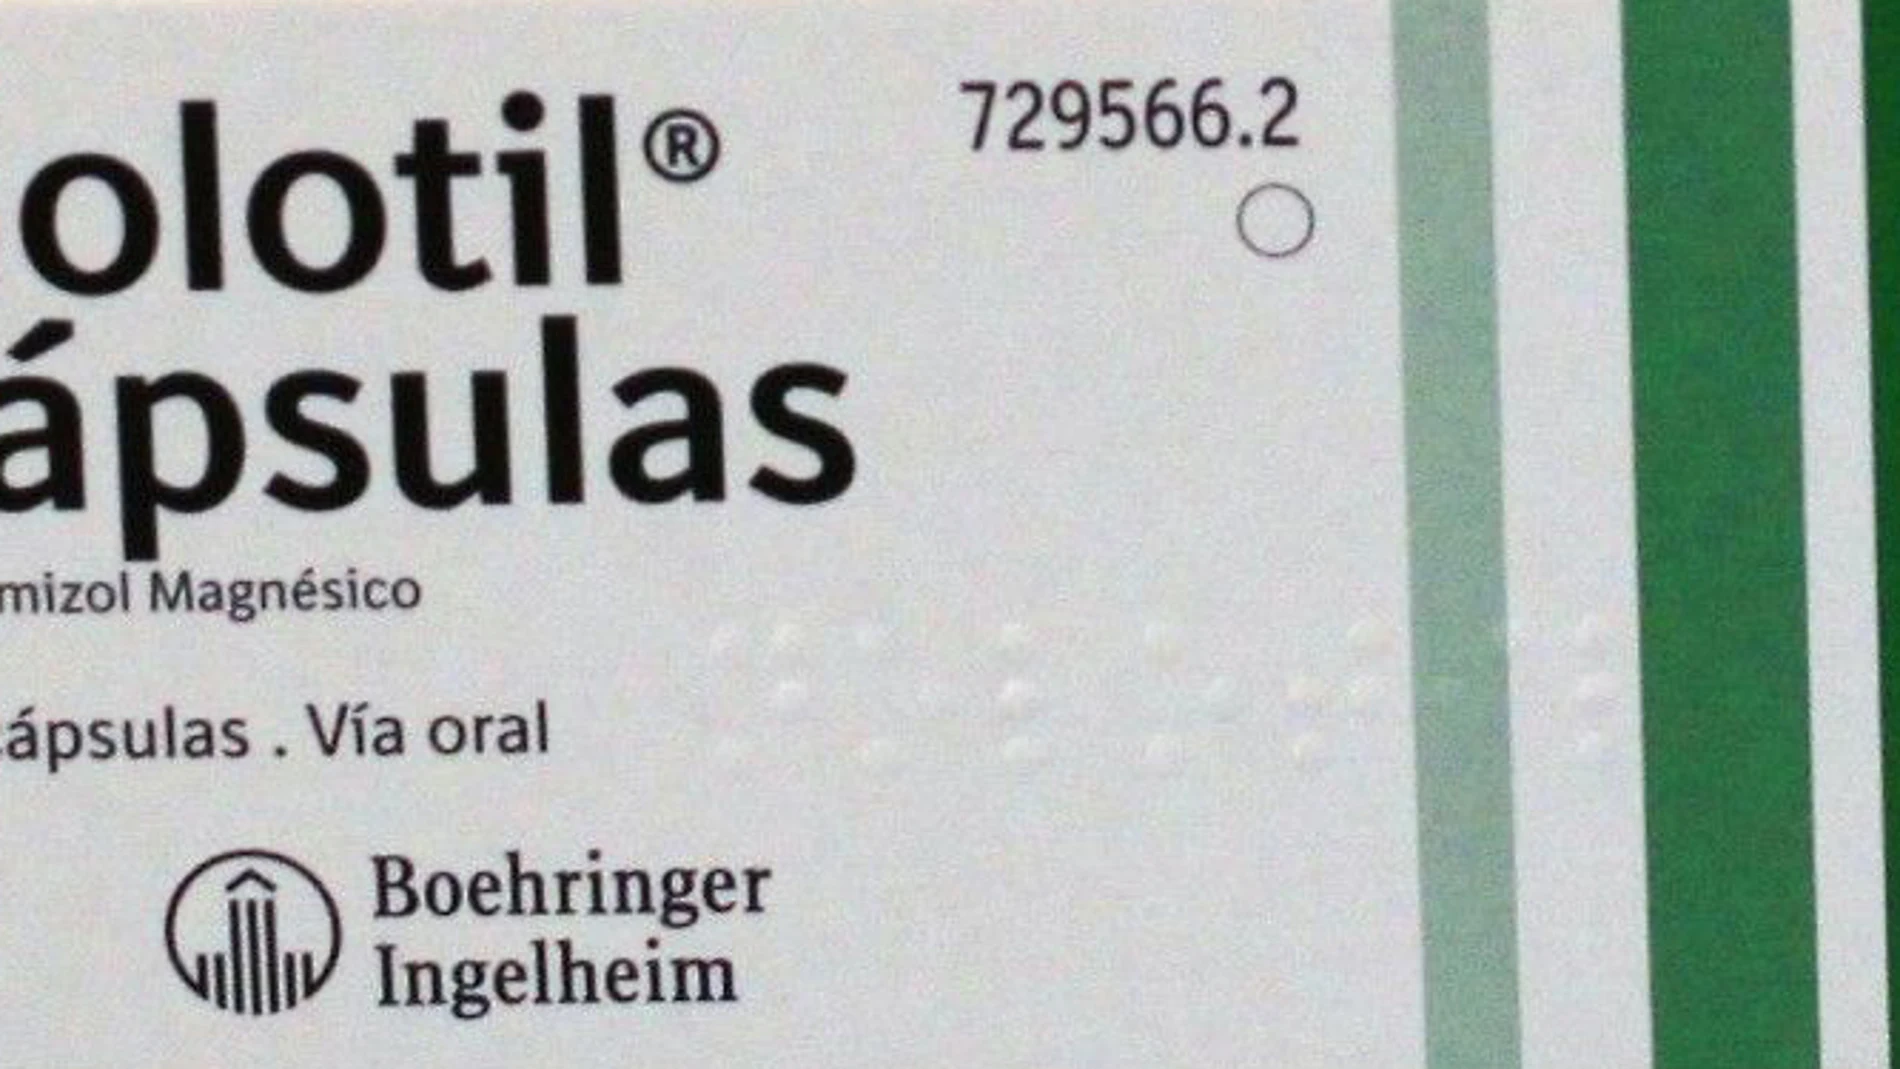 La investigación de una traductora médica pone el foco sobre los riesgos del Nolotil